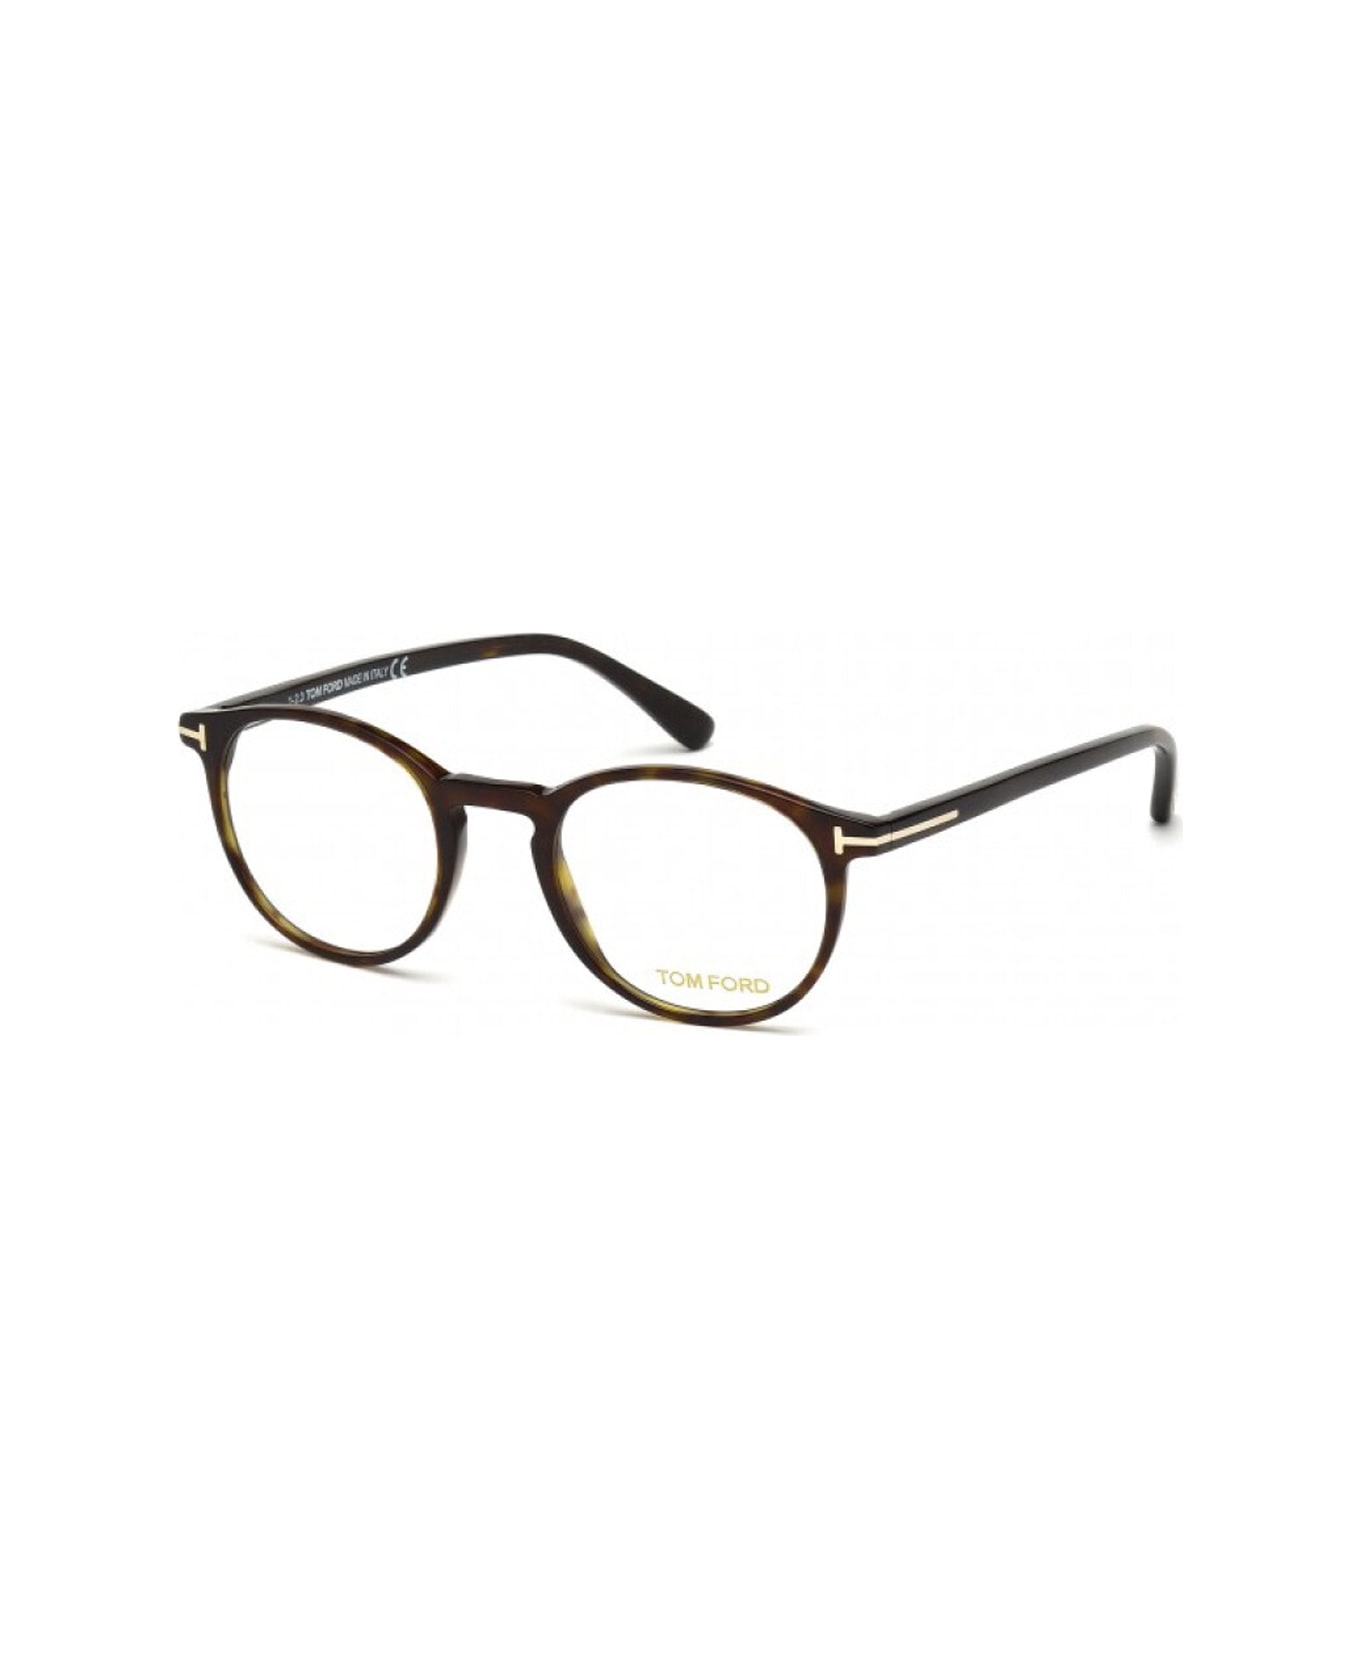 Tom Ford Eyewear Ft5294 Glasses - Marrone